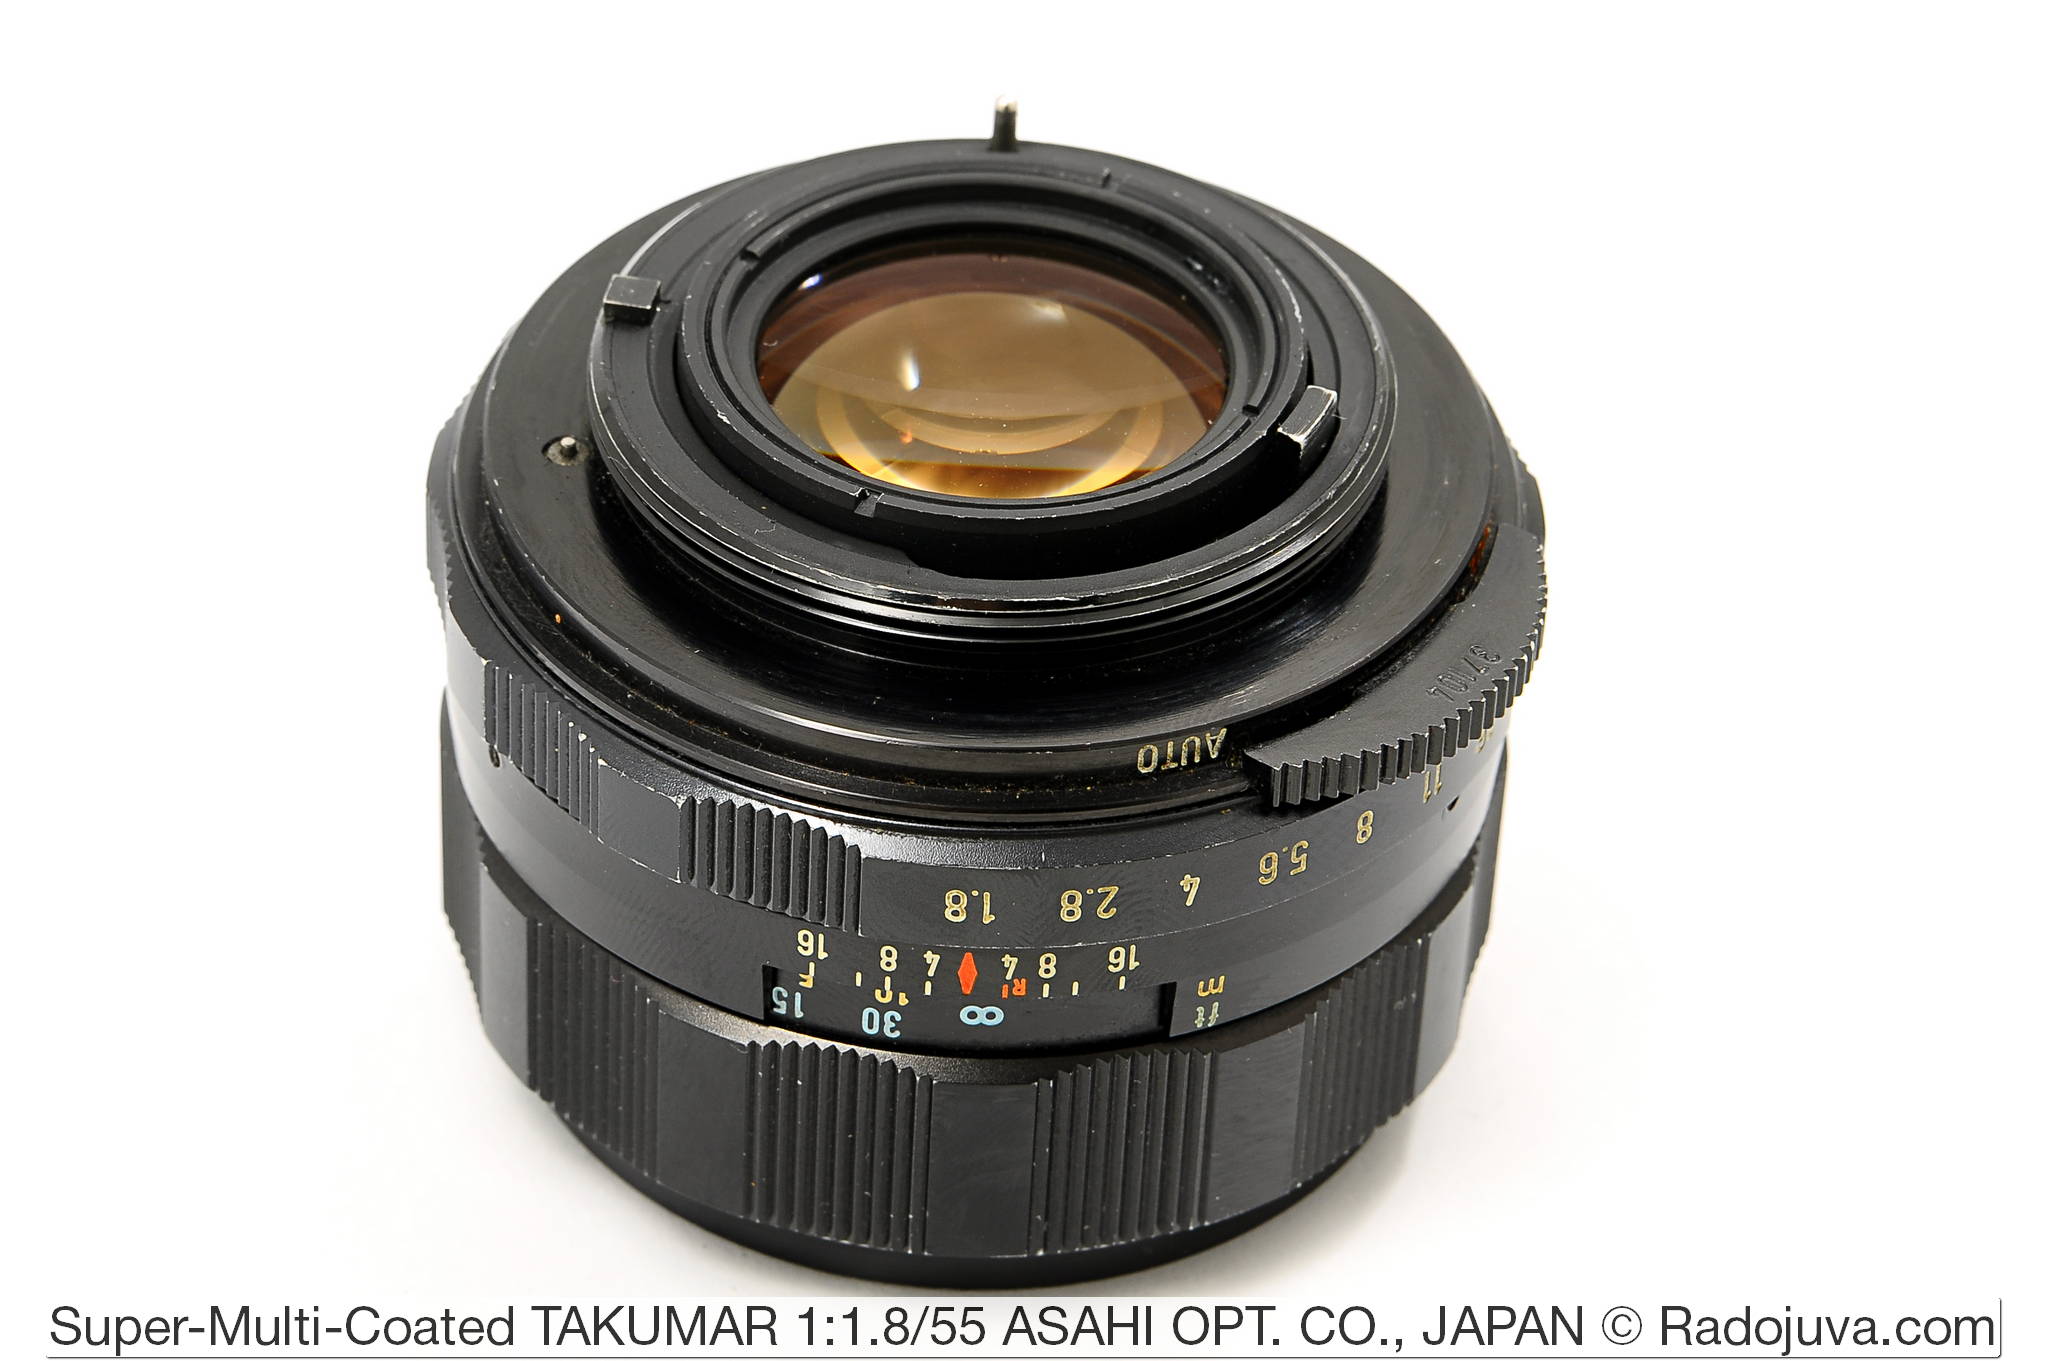 Super-Multi-Coated TAKUMAR 1: 1.8 / 55 ASAHI OPT. CO., JAPAN